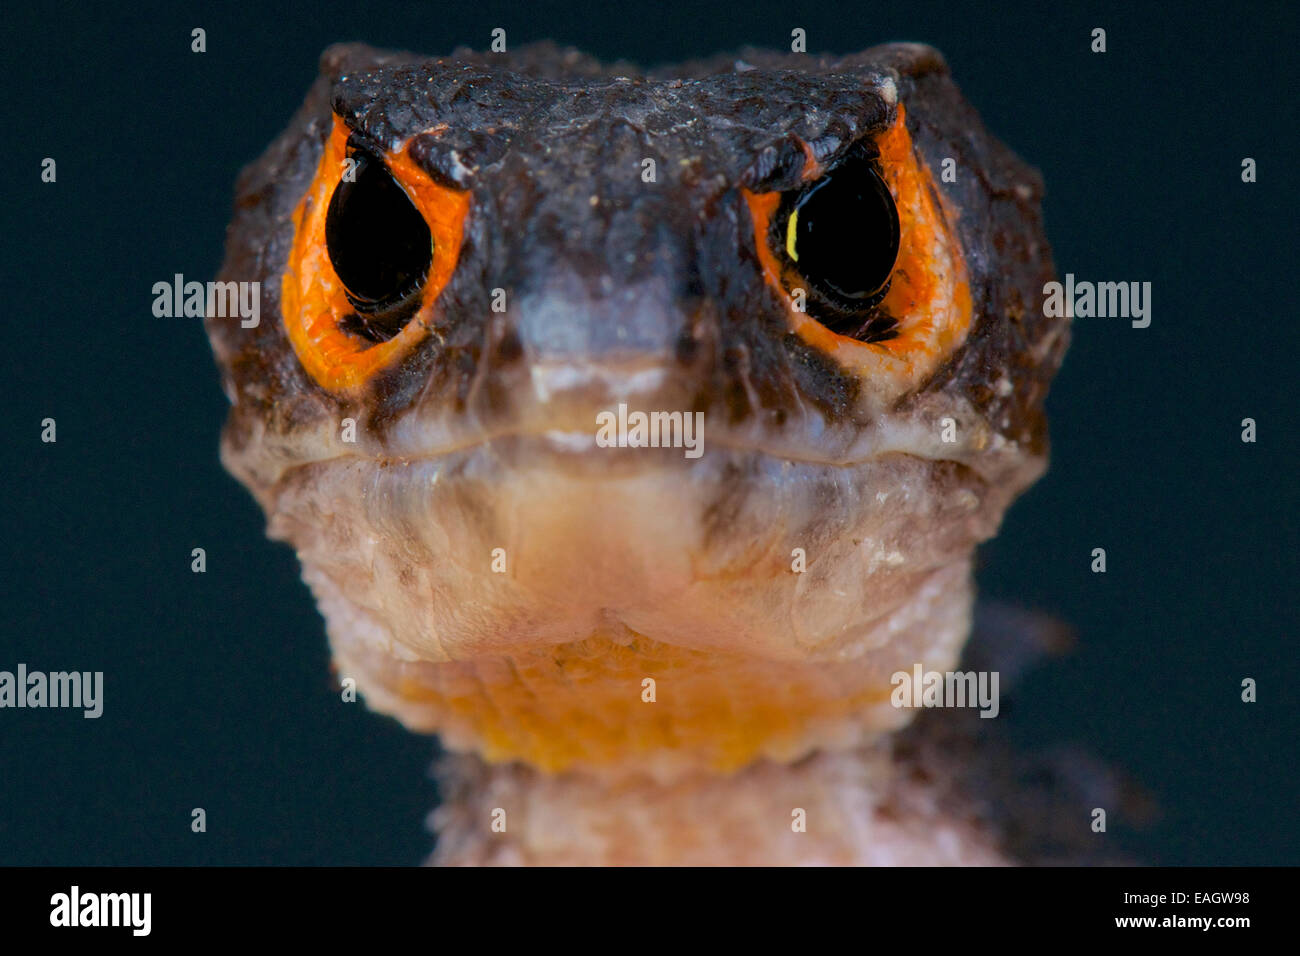 Orange-eyed crocodile skink / Triblonotus gracilis Stock Photo